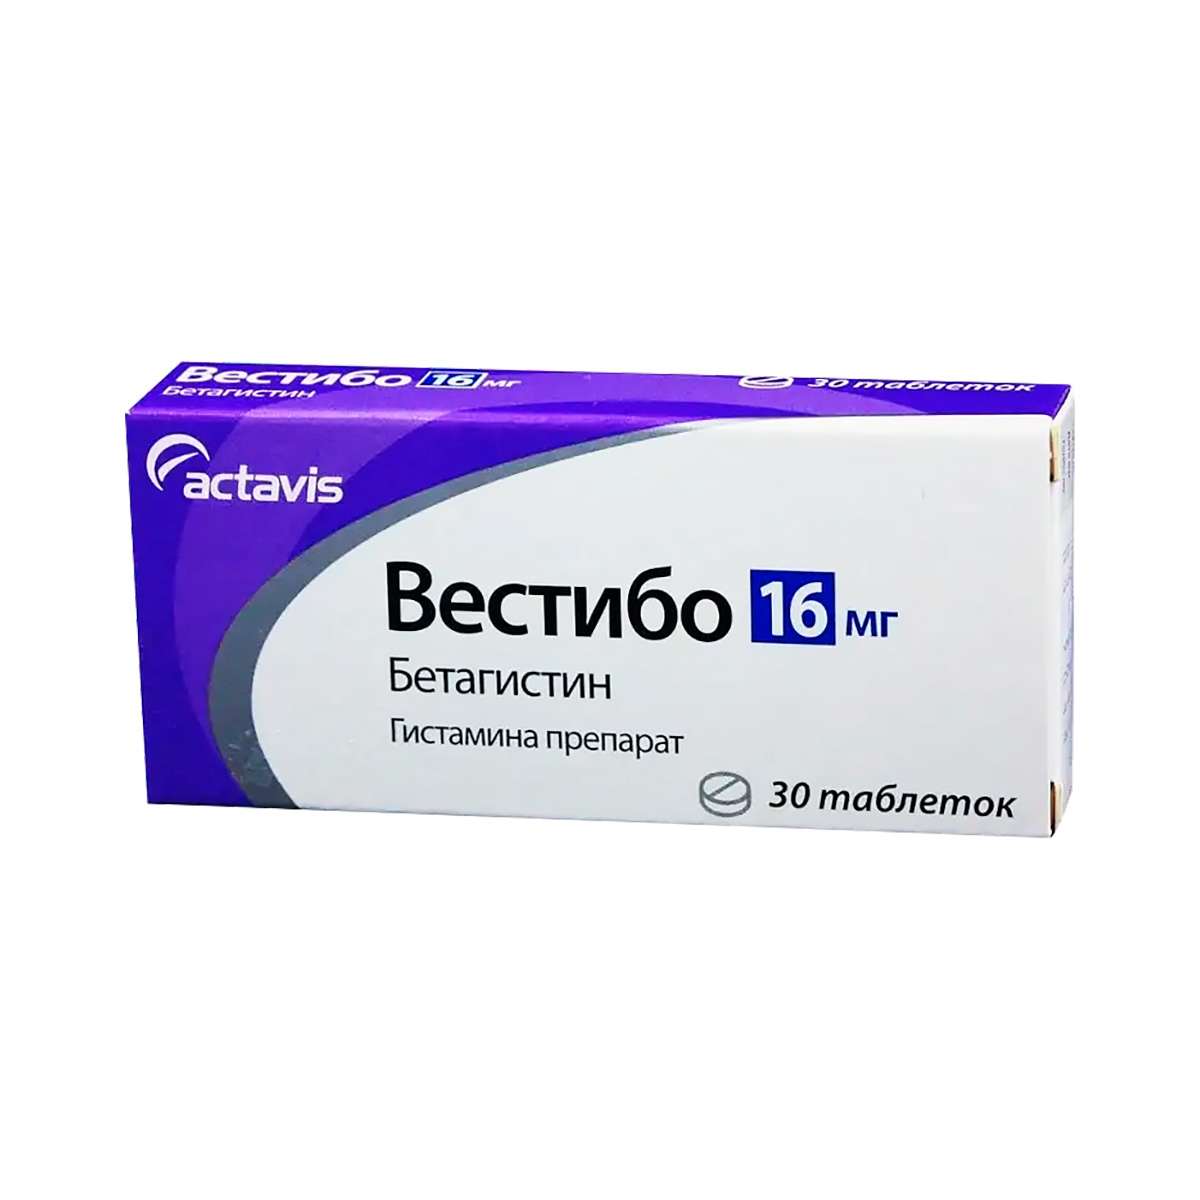 Вестибо 16 мг таблетки 30 шт